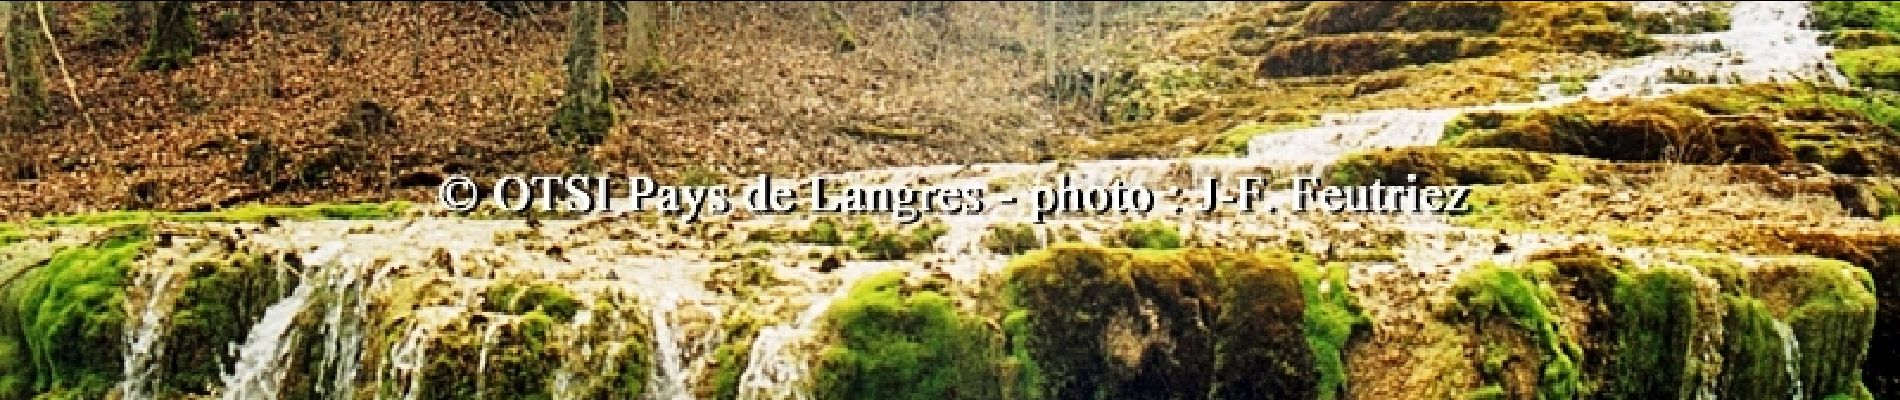 Percorso Bicicletta Langres - Entre Plateau de Langres et Montagne - Photo